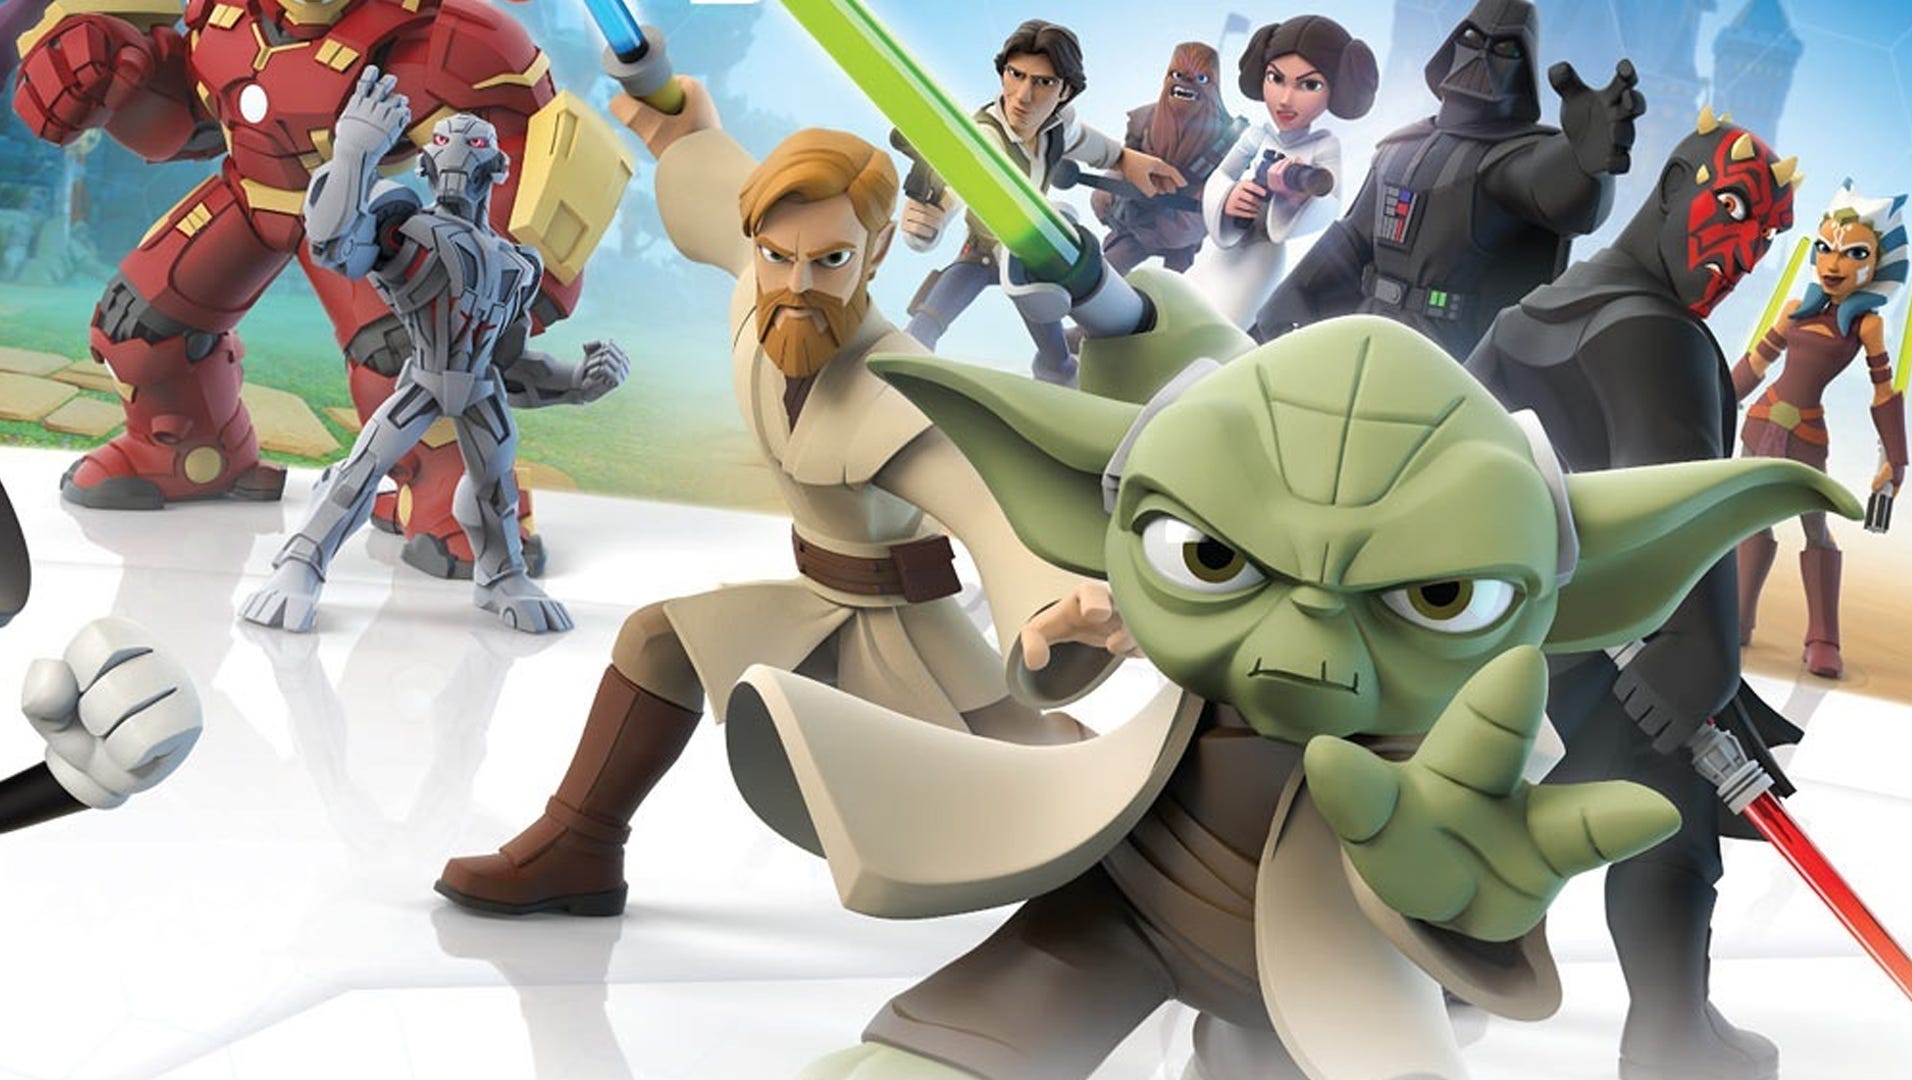 marathon Doodskaak elke dag Yoda-le-hee-hoo: Disney Infinity 3.0 Star Wars review | Technobubble